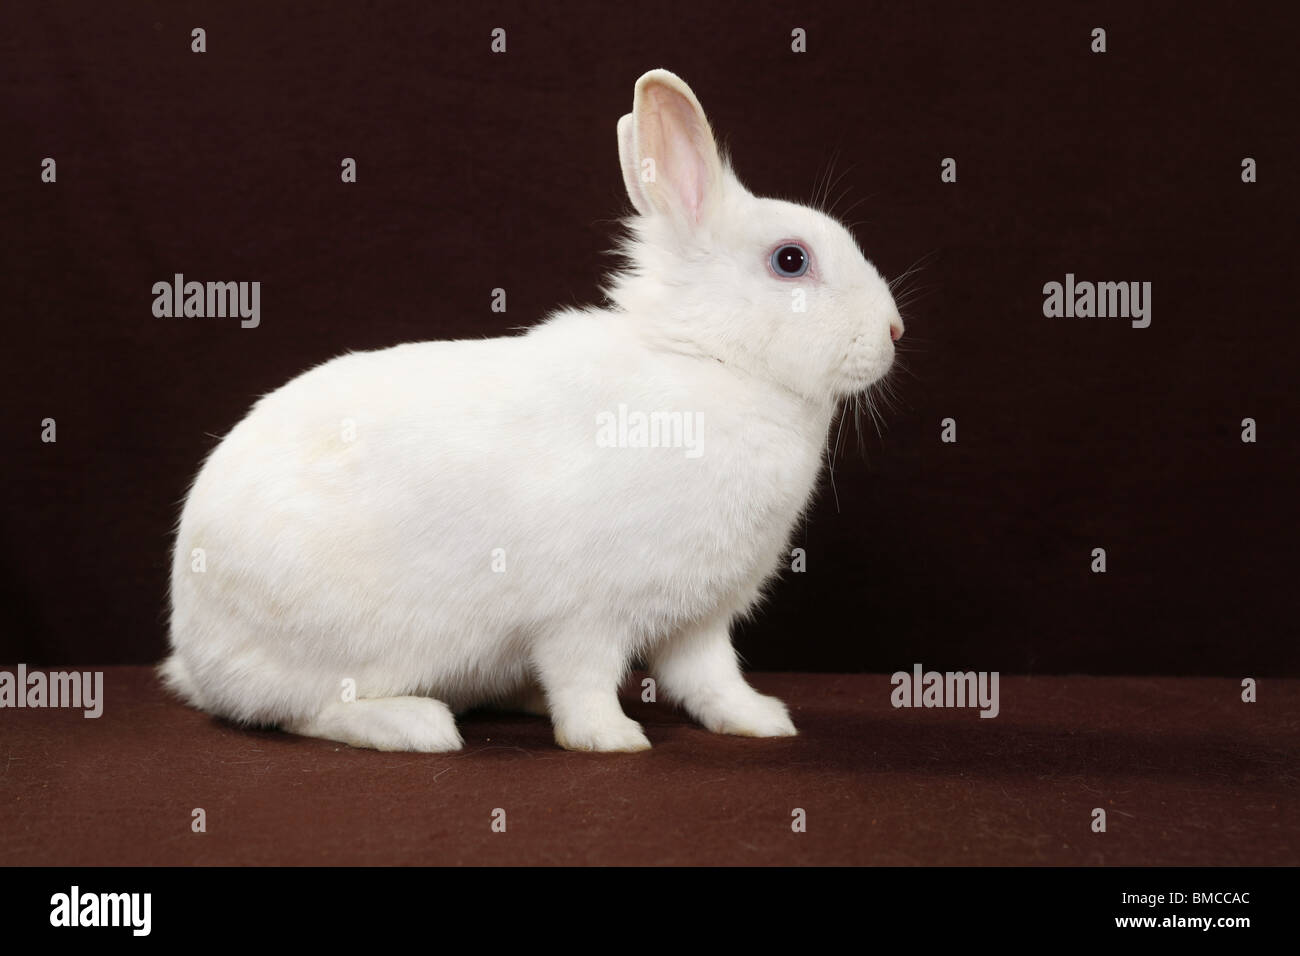 Zwergkaninchen / pygmy bunny Stock Photo